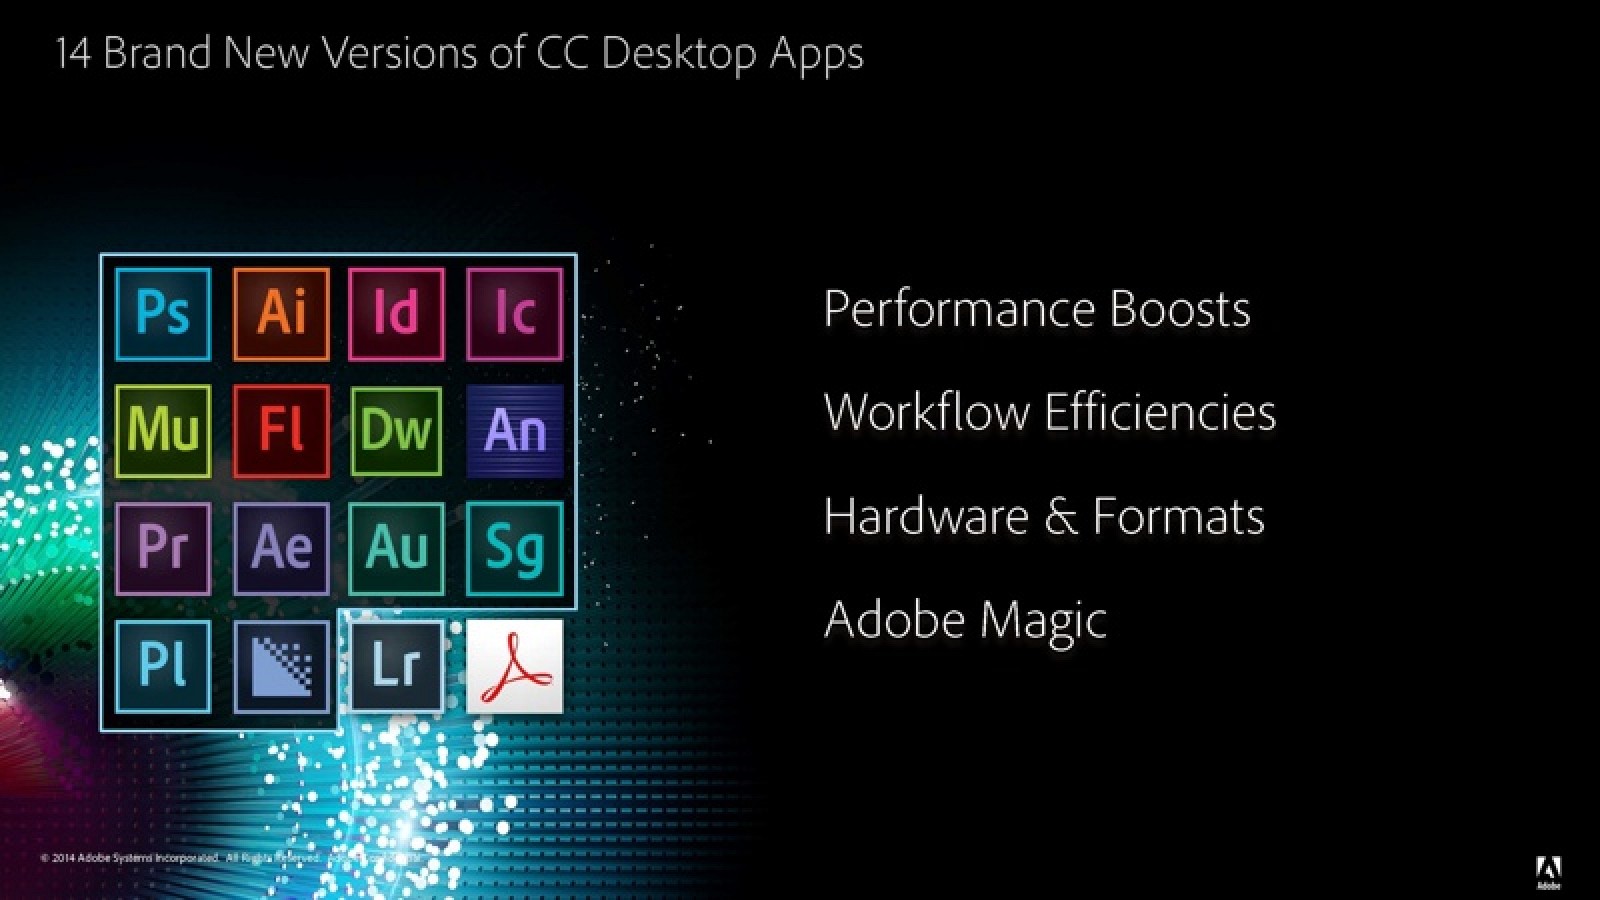 Adobe premiere pro cc 2014 mac free download